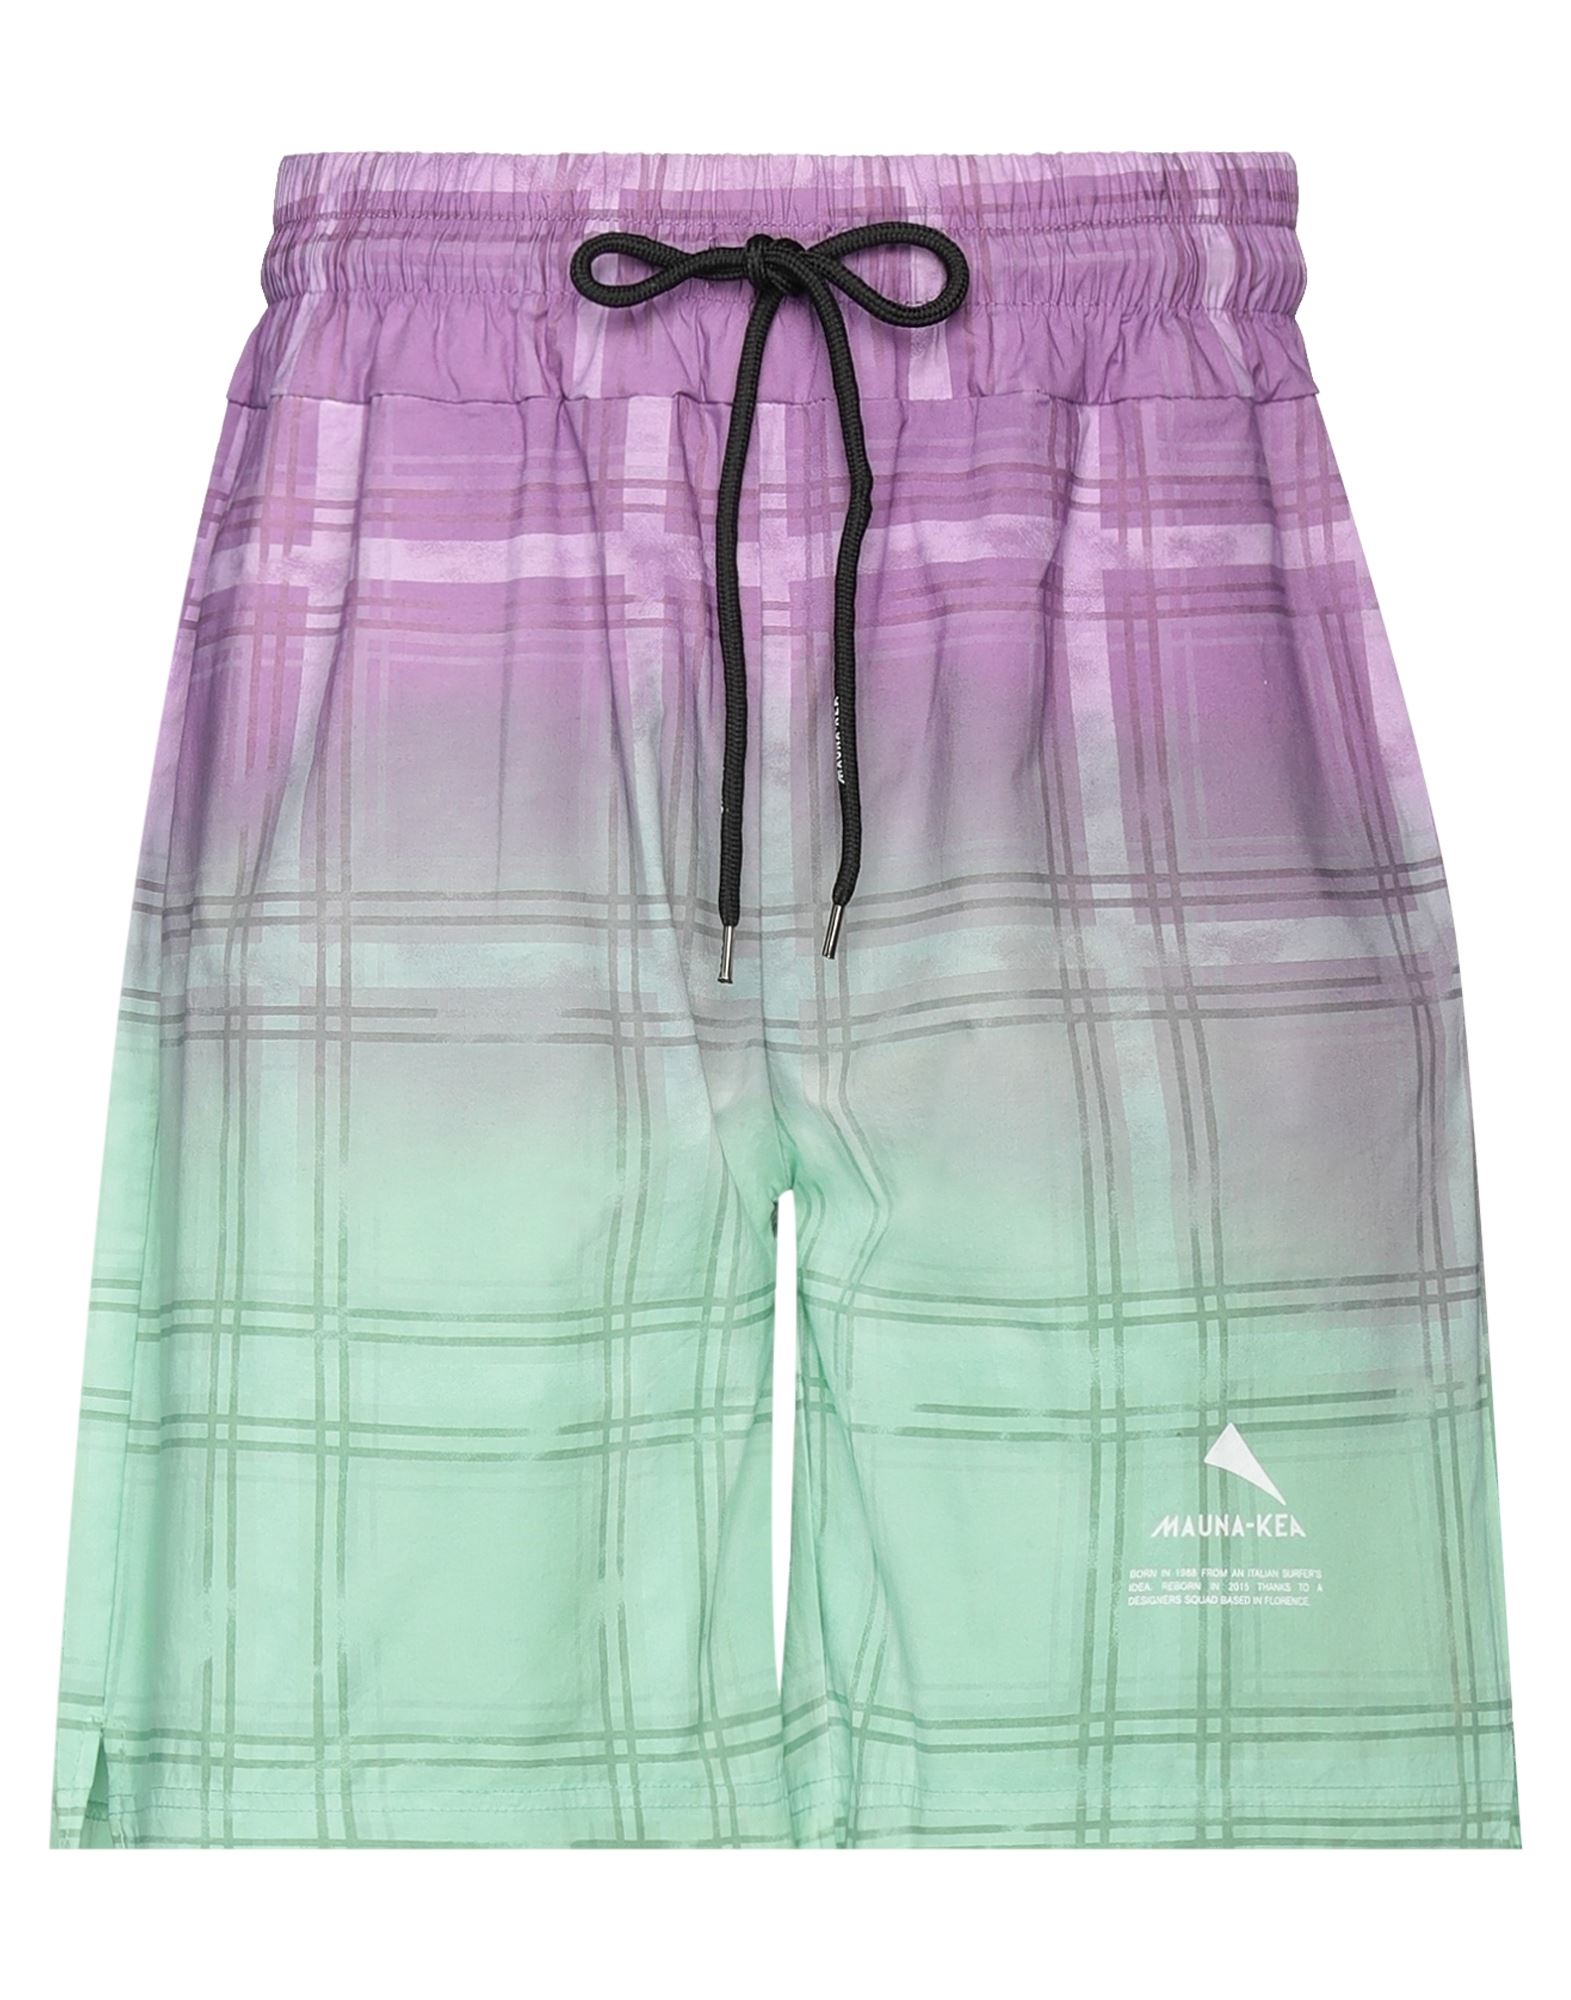 Mauna Kea Man Shorts & Bermuda Shorts Purple Size S Cotton